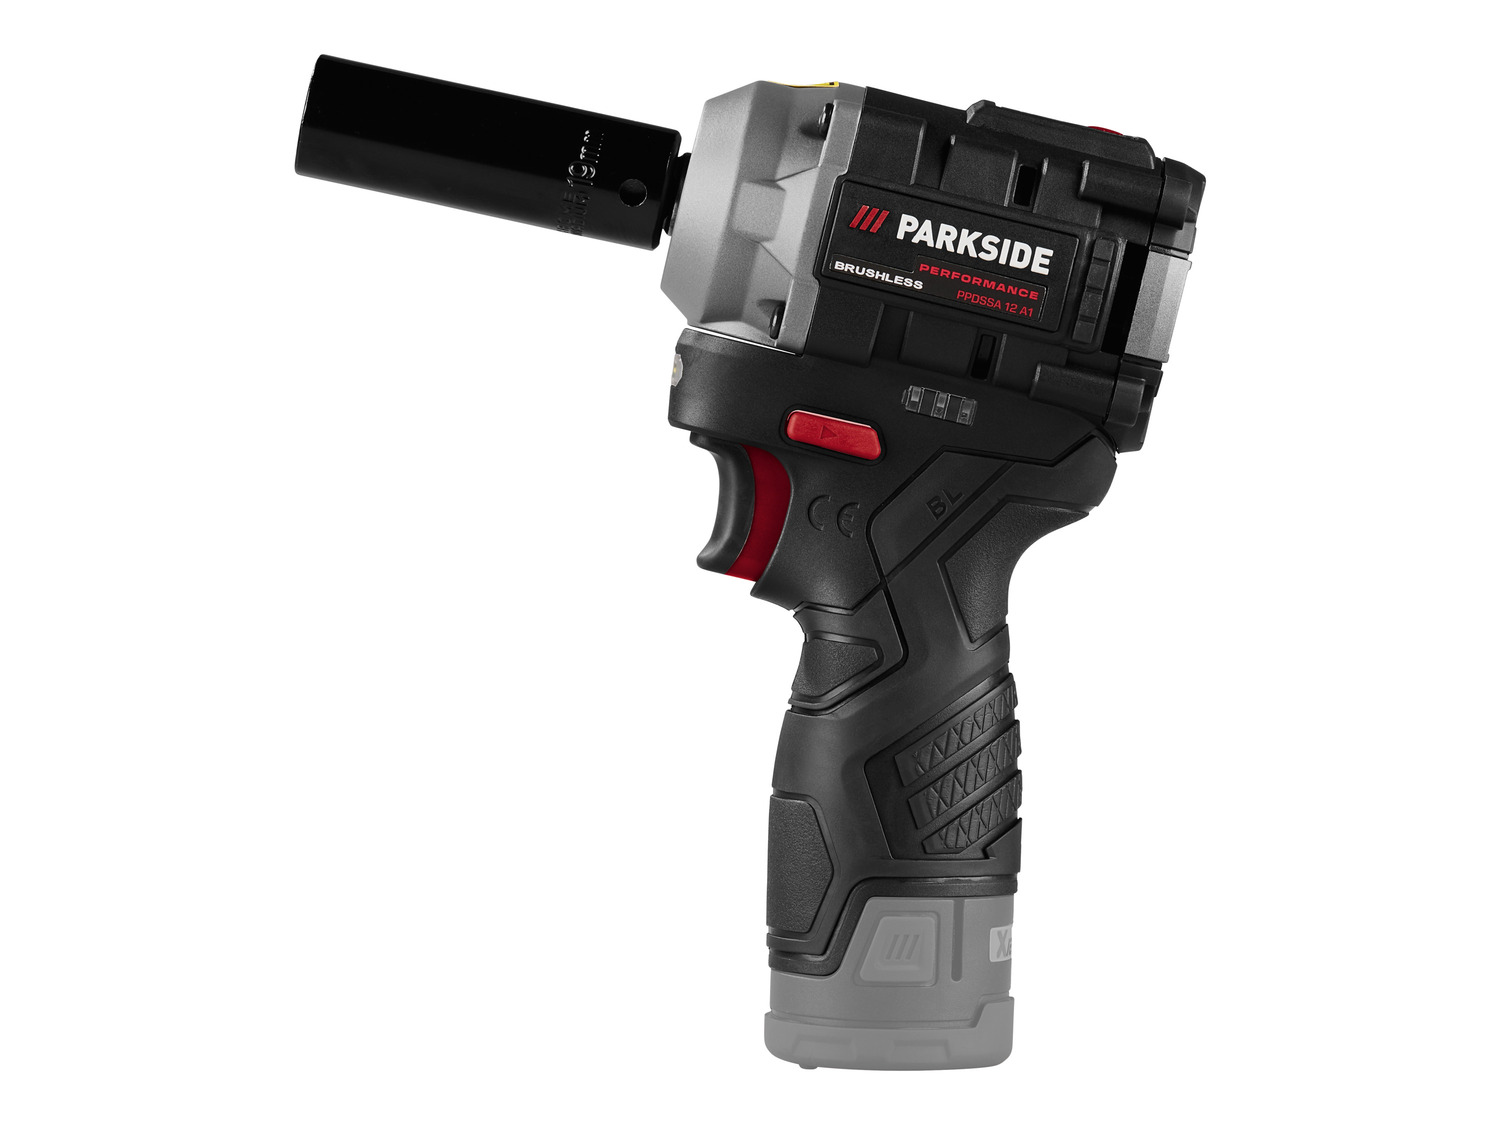 PARKSIDE PERFORMANCE® 12 V »P… Akku-Drehschlagschrauber